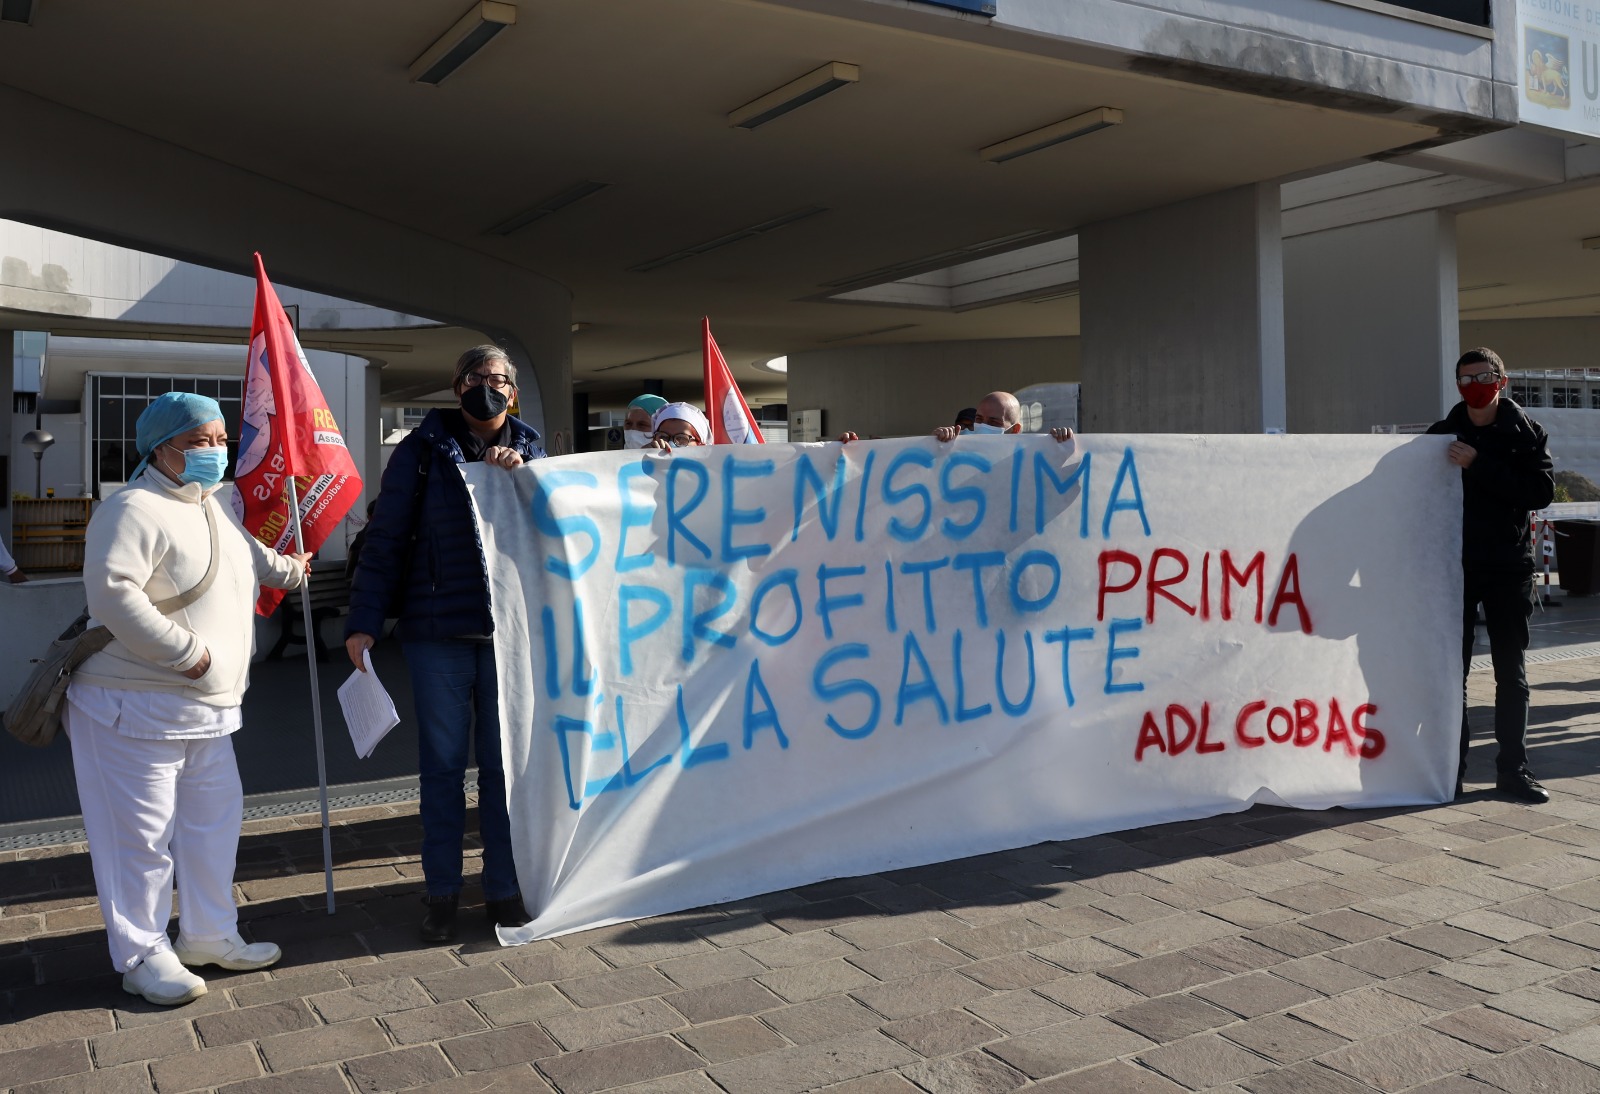 Sindacato di Base ADL Cobas - Serenissima: il profitto prima della salute